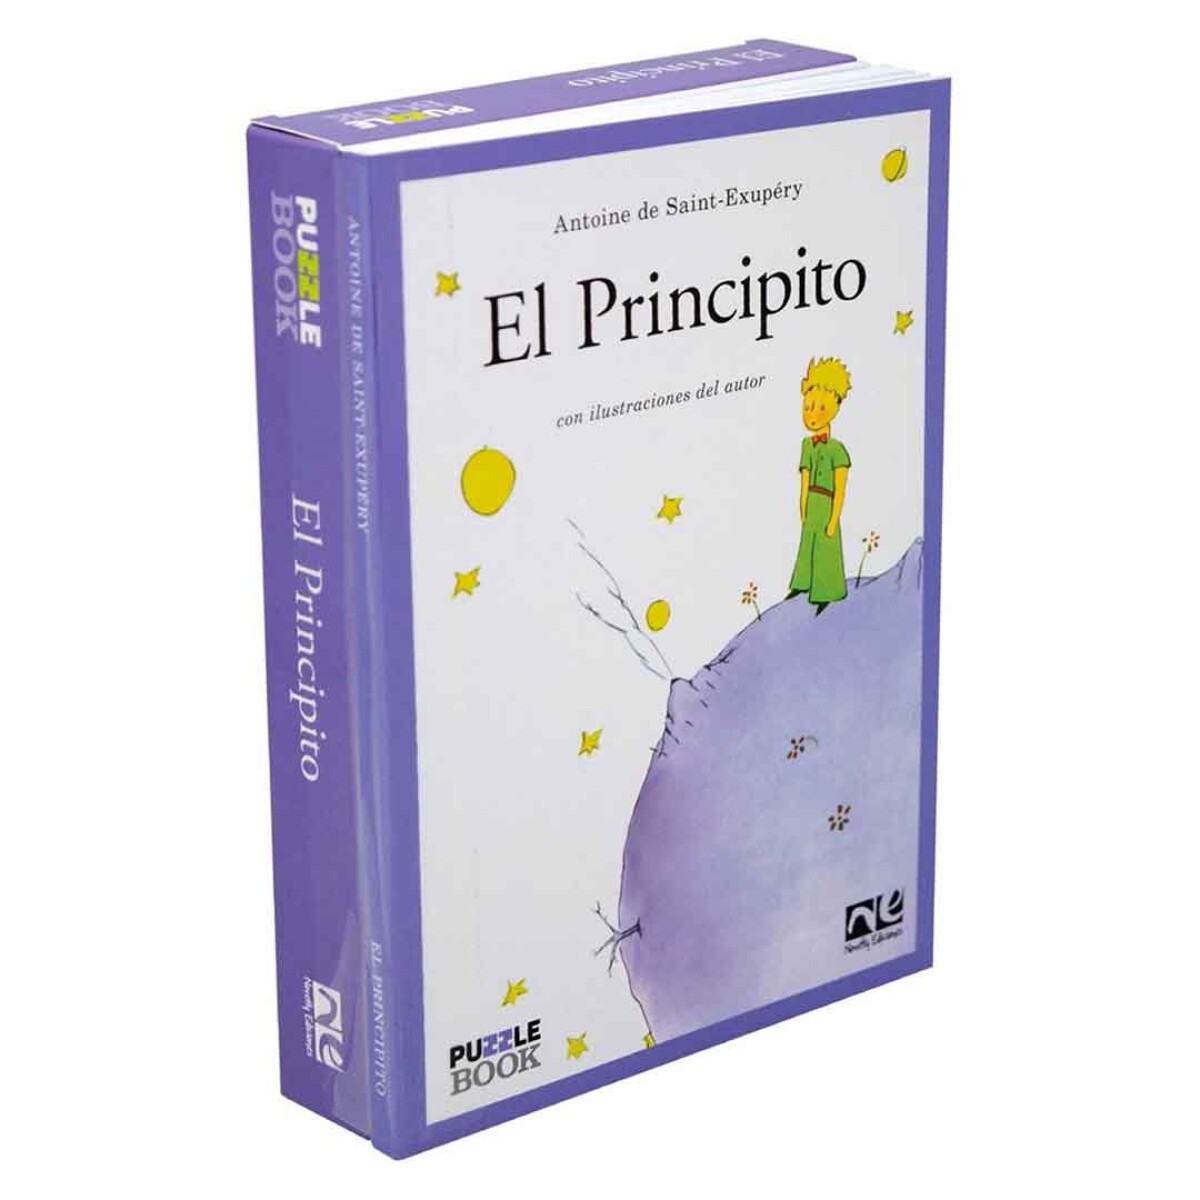 Libro El Principito con ilustraciones originales + puzzle - 001 